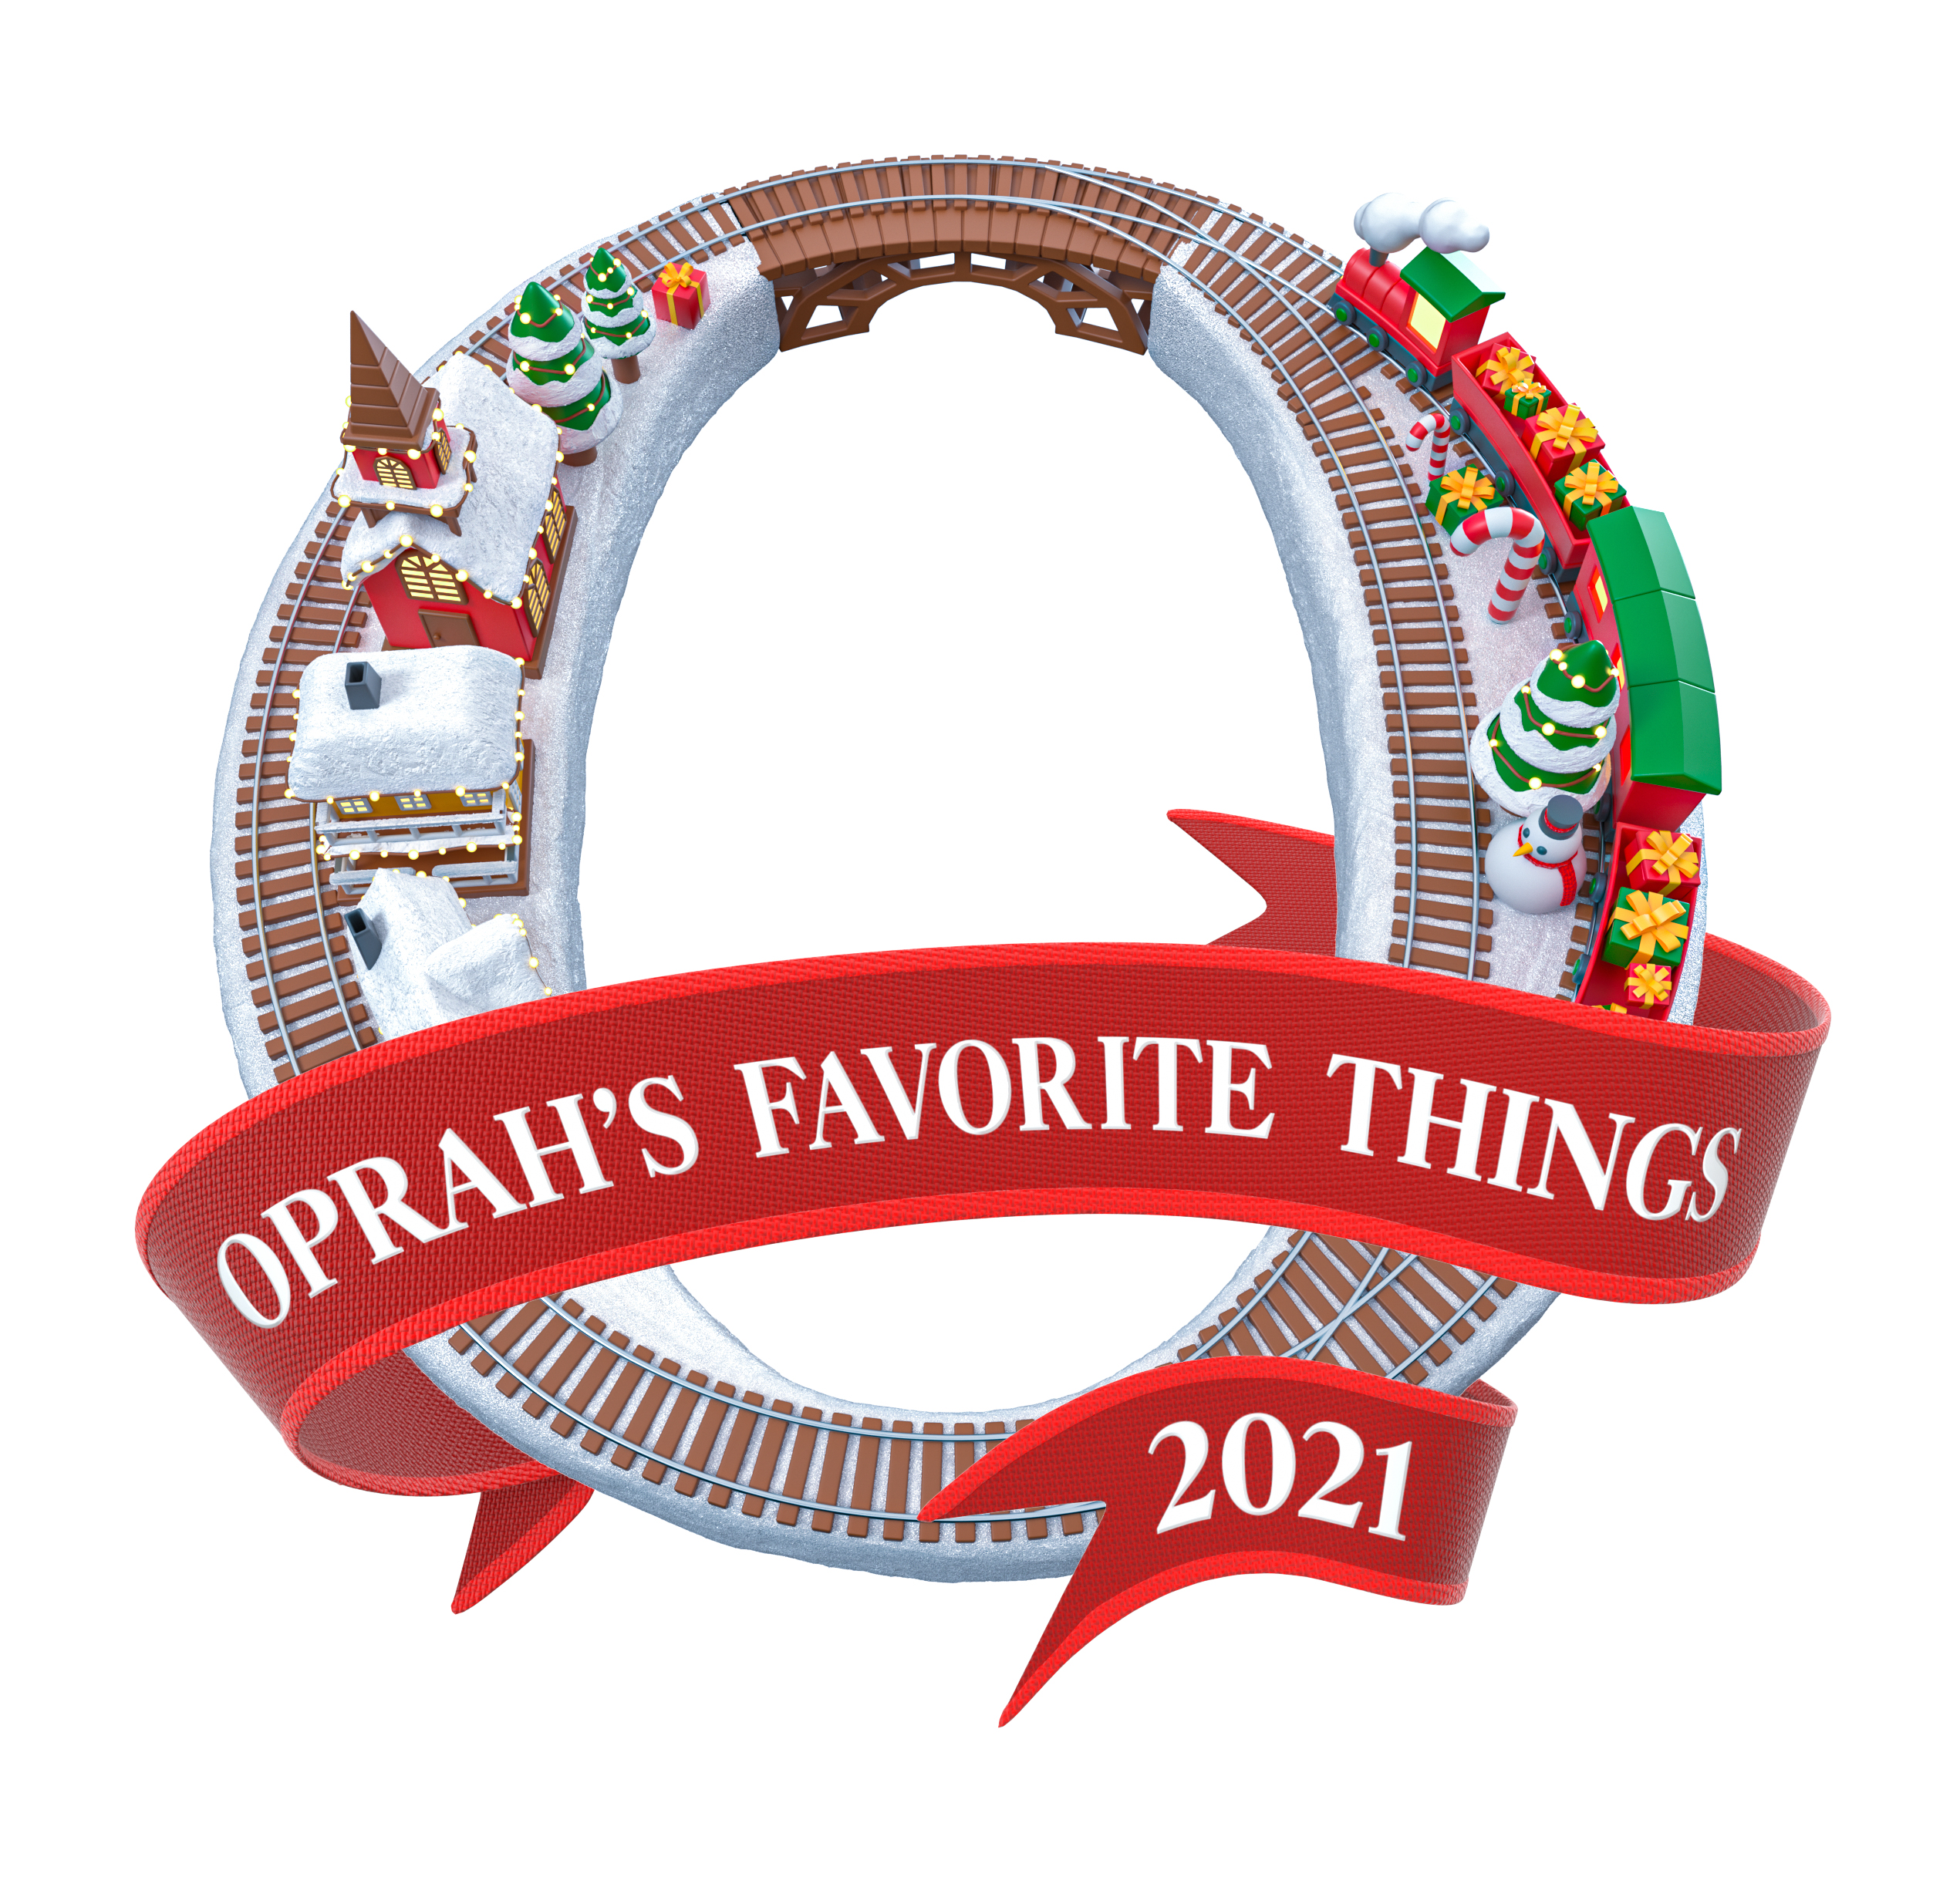 Aura Selected as One of Oprah's Favorite Things 2021